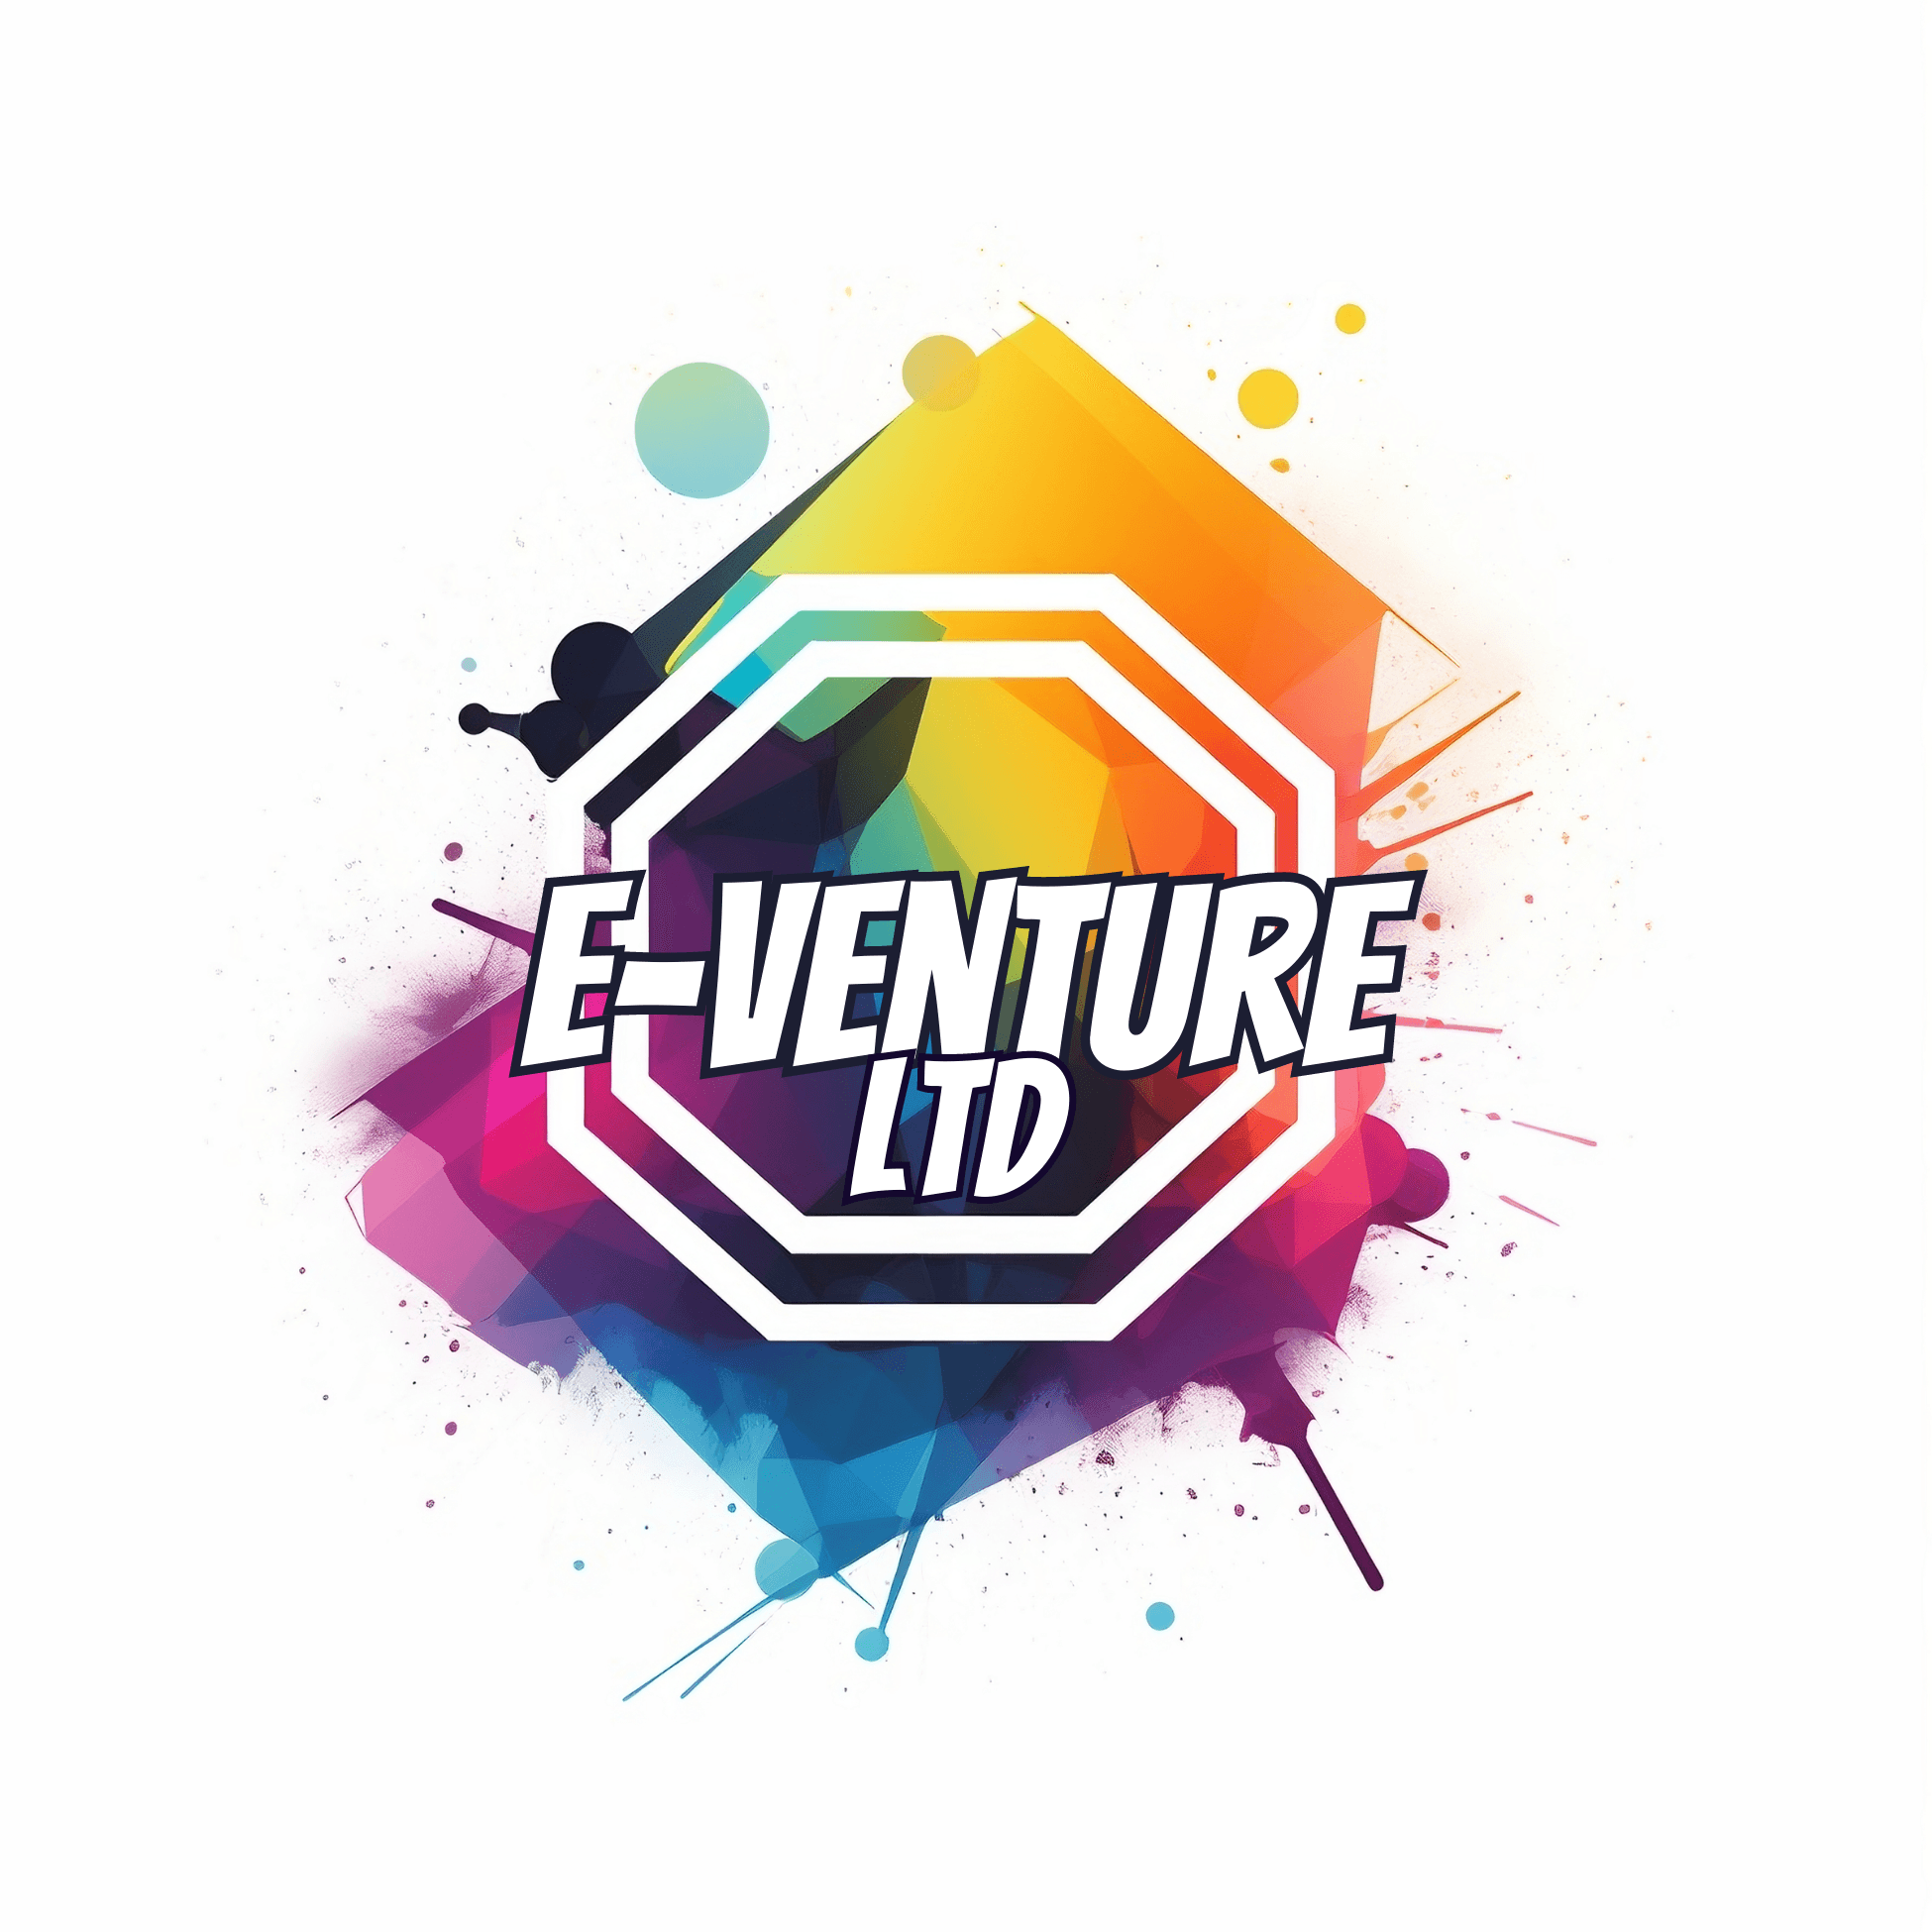 E-Venture LTD